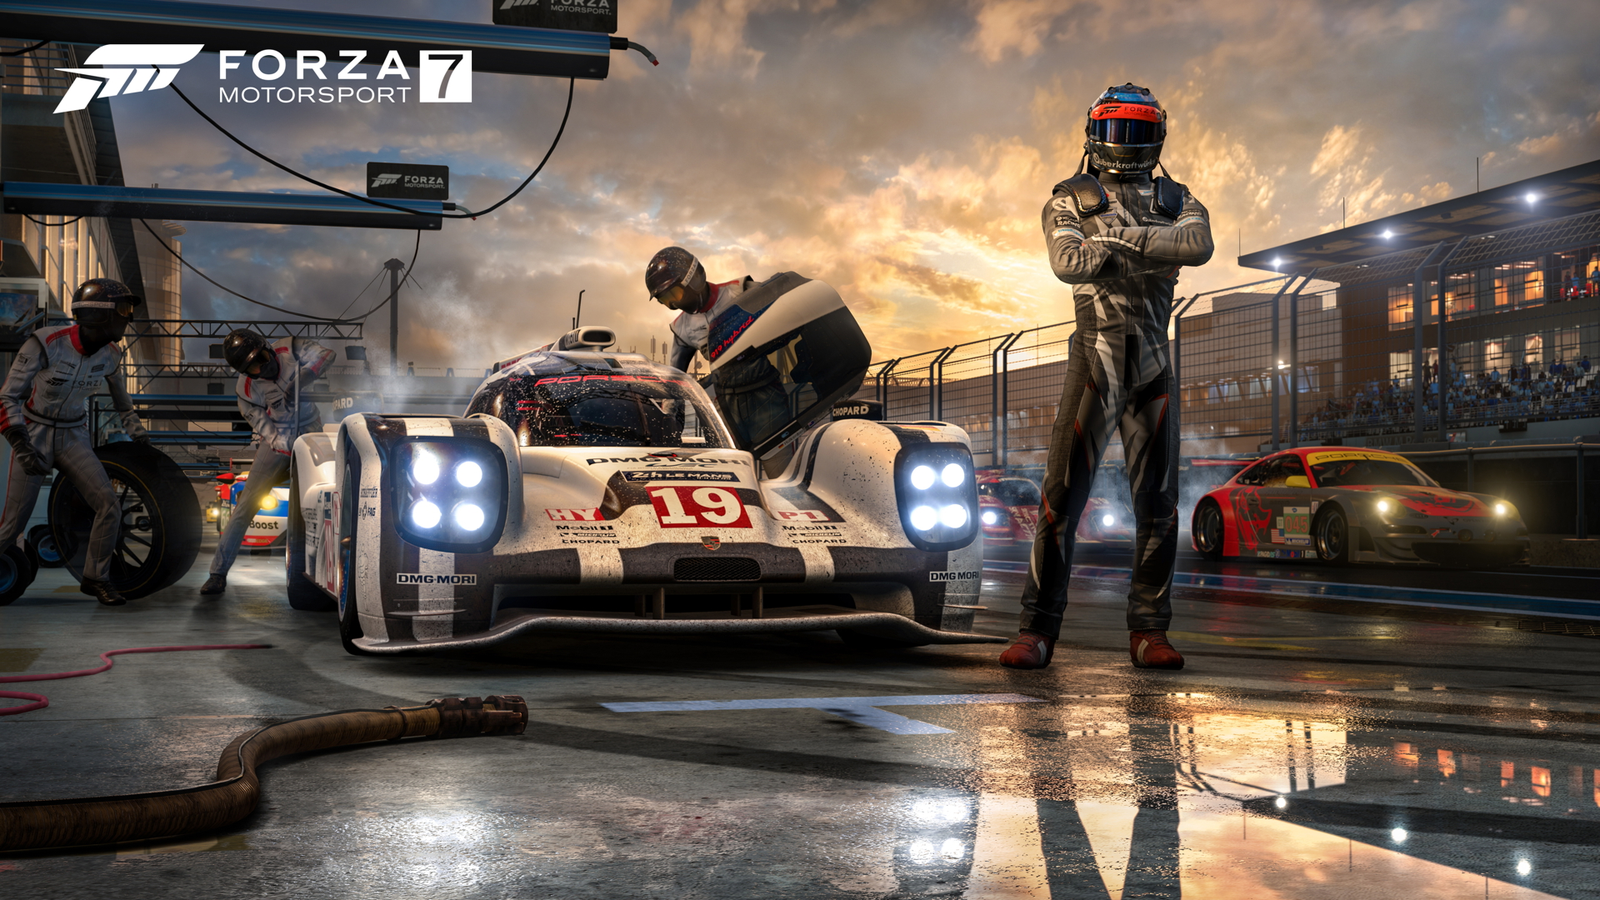 Forza Motorsport 7 is dead, long live Forza Motorsport - CNET